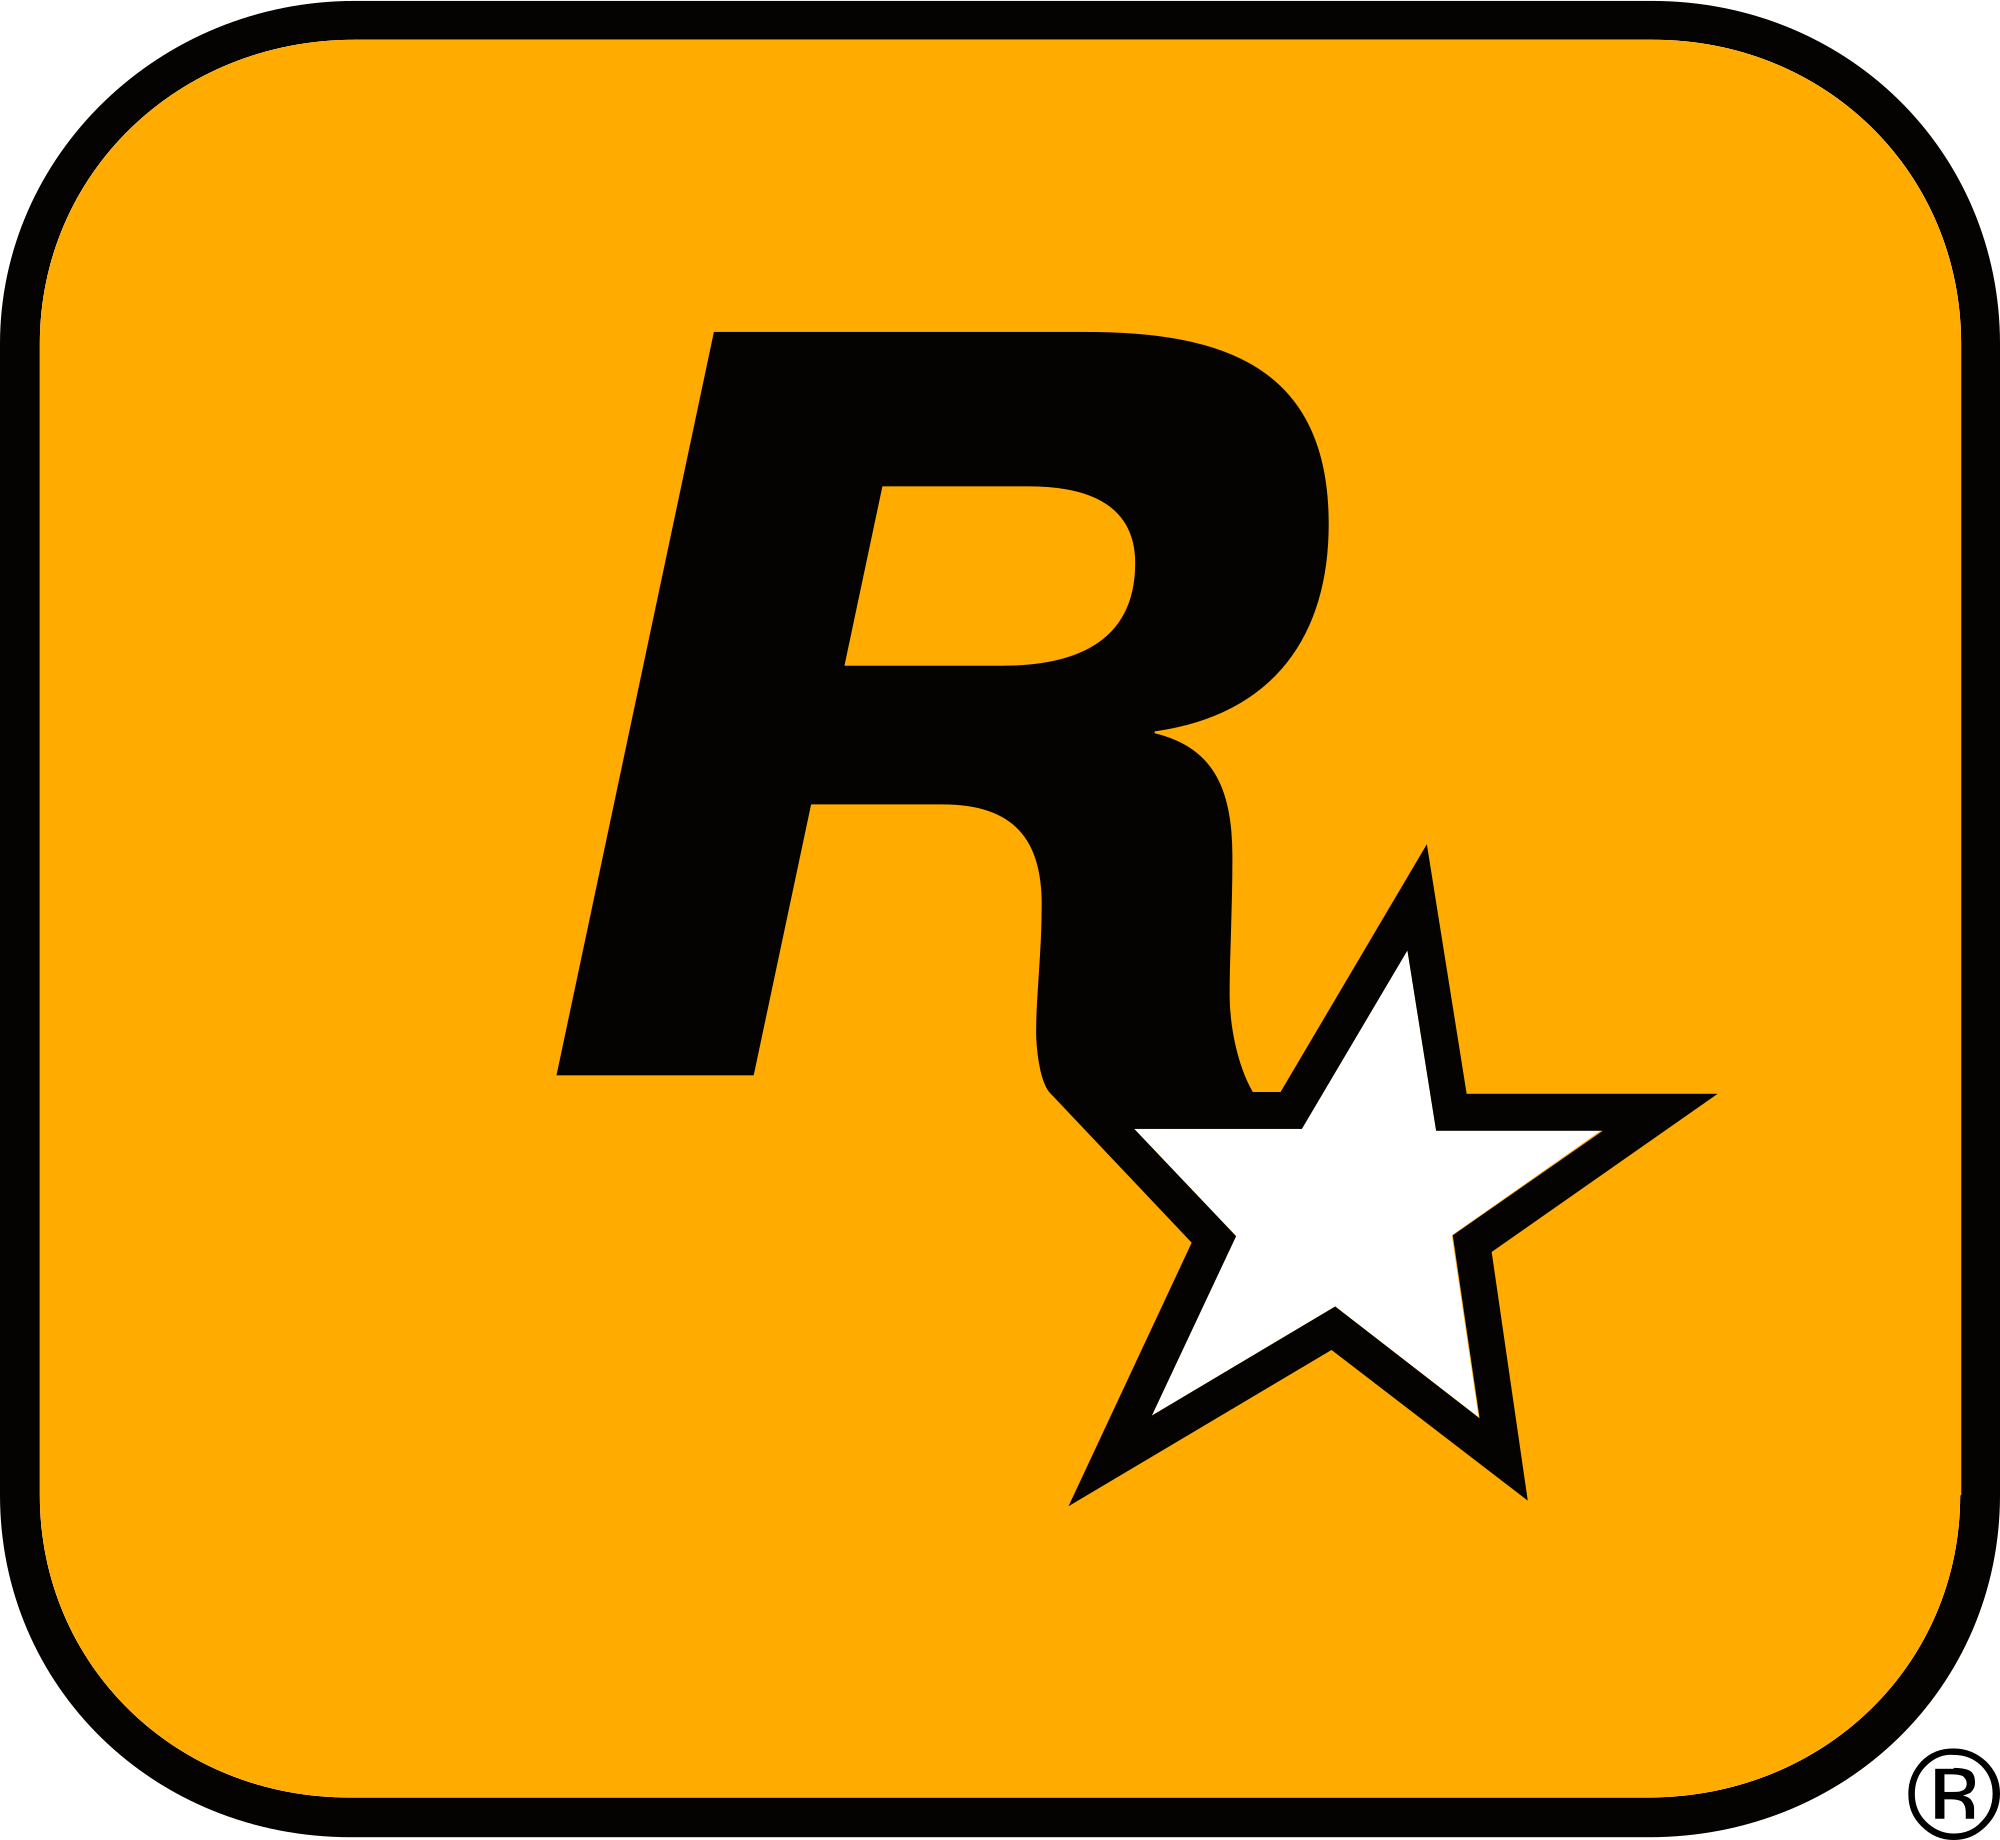 Télephone information entreprise  Rockstar Games